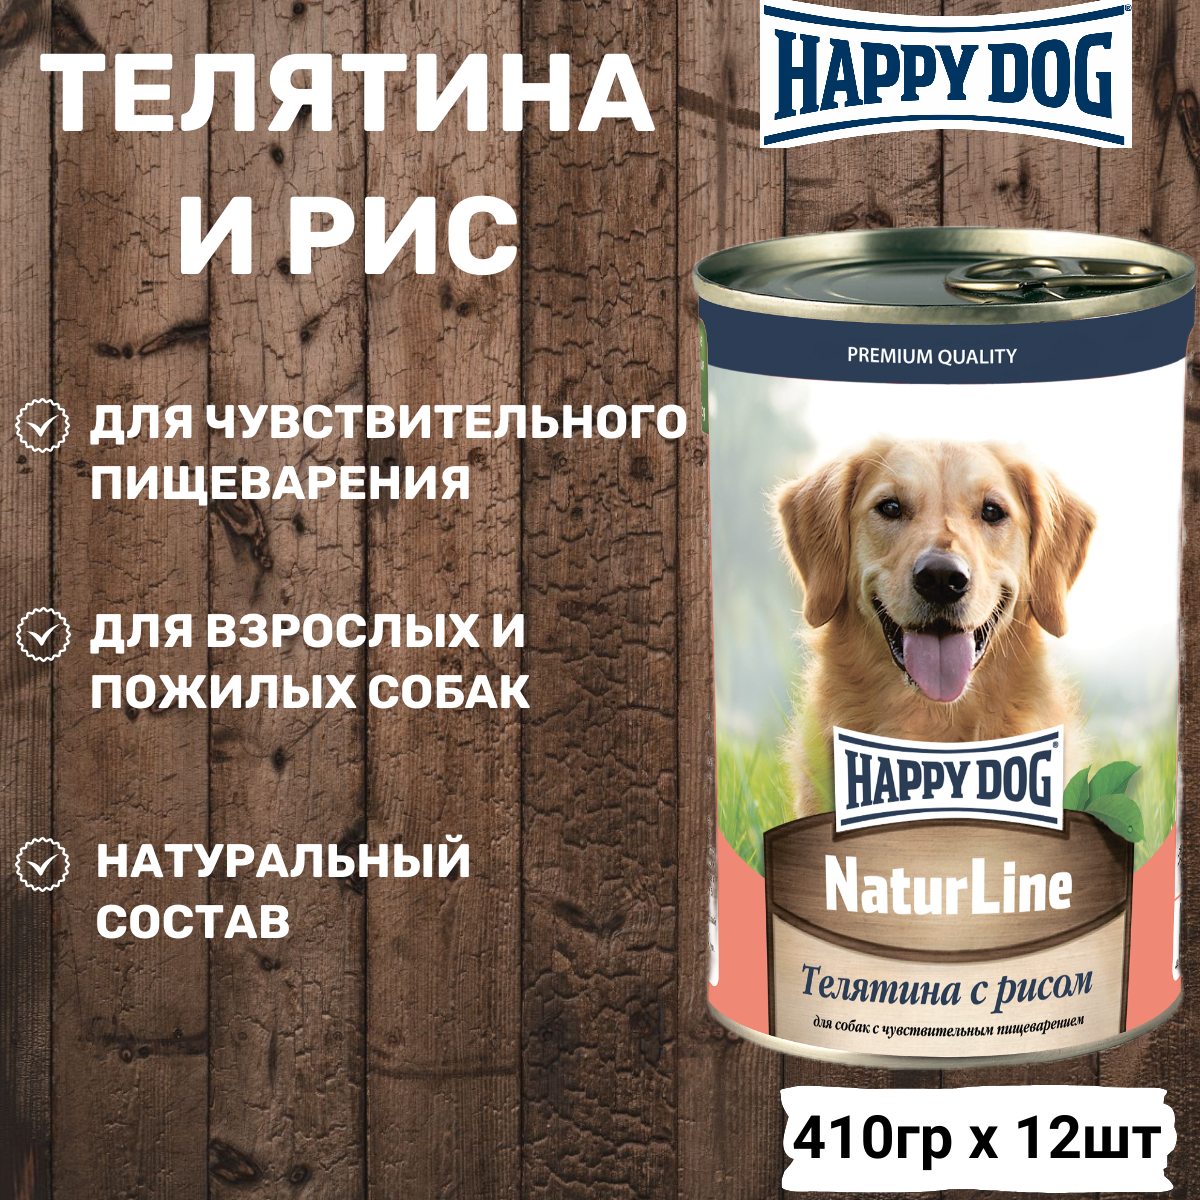 Консервы для собак Happy Dog NatureLine (Телятина с рисом), 410 гр. По 12 шт.